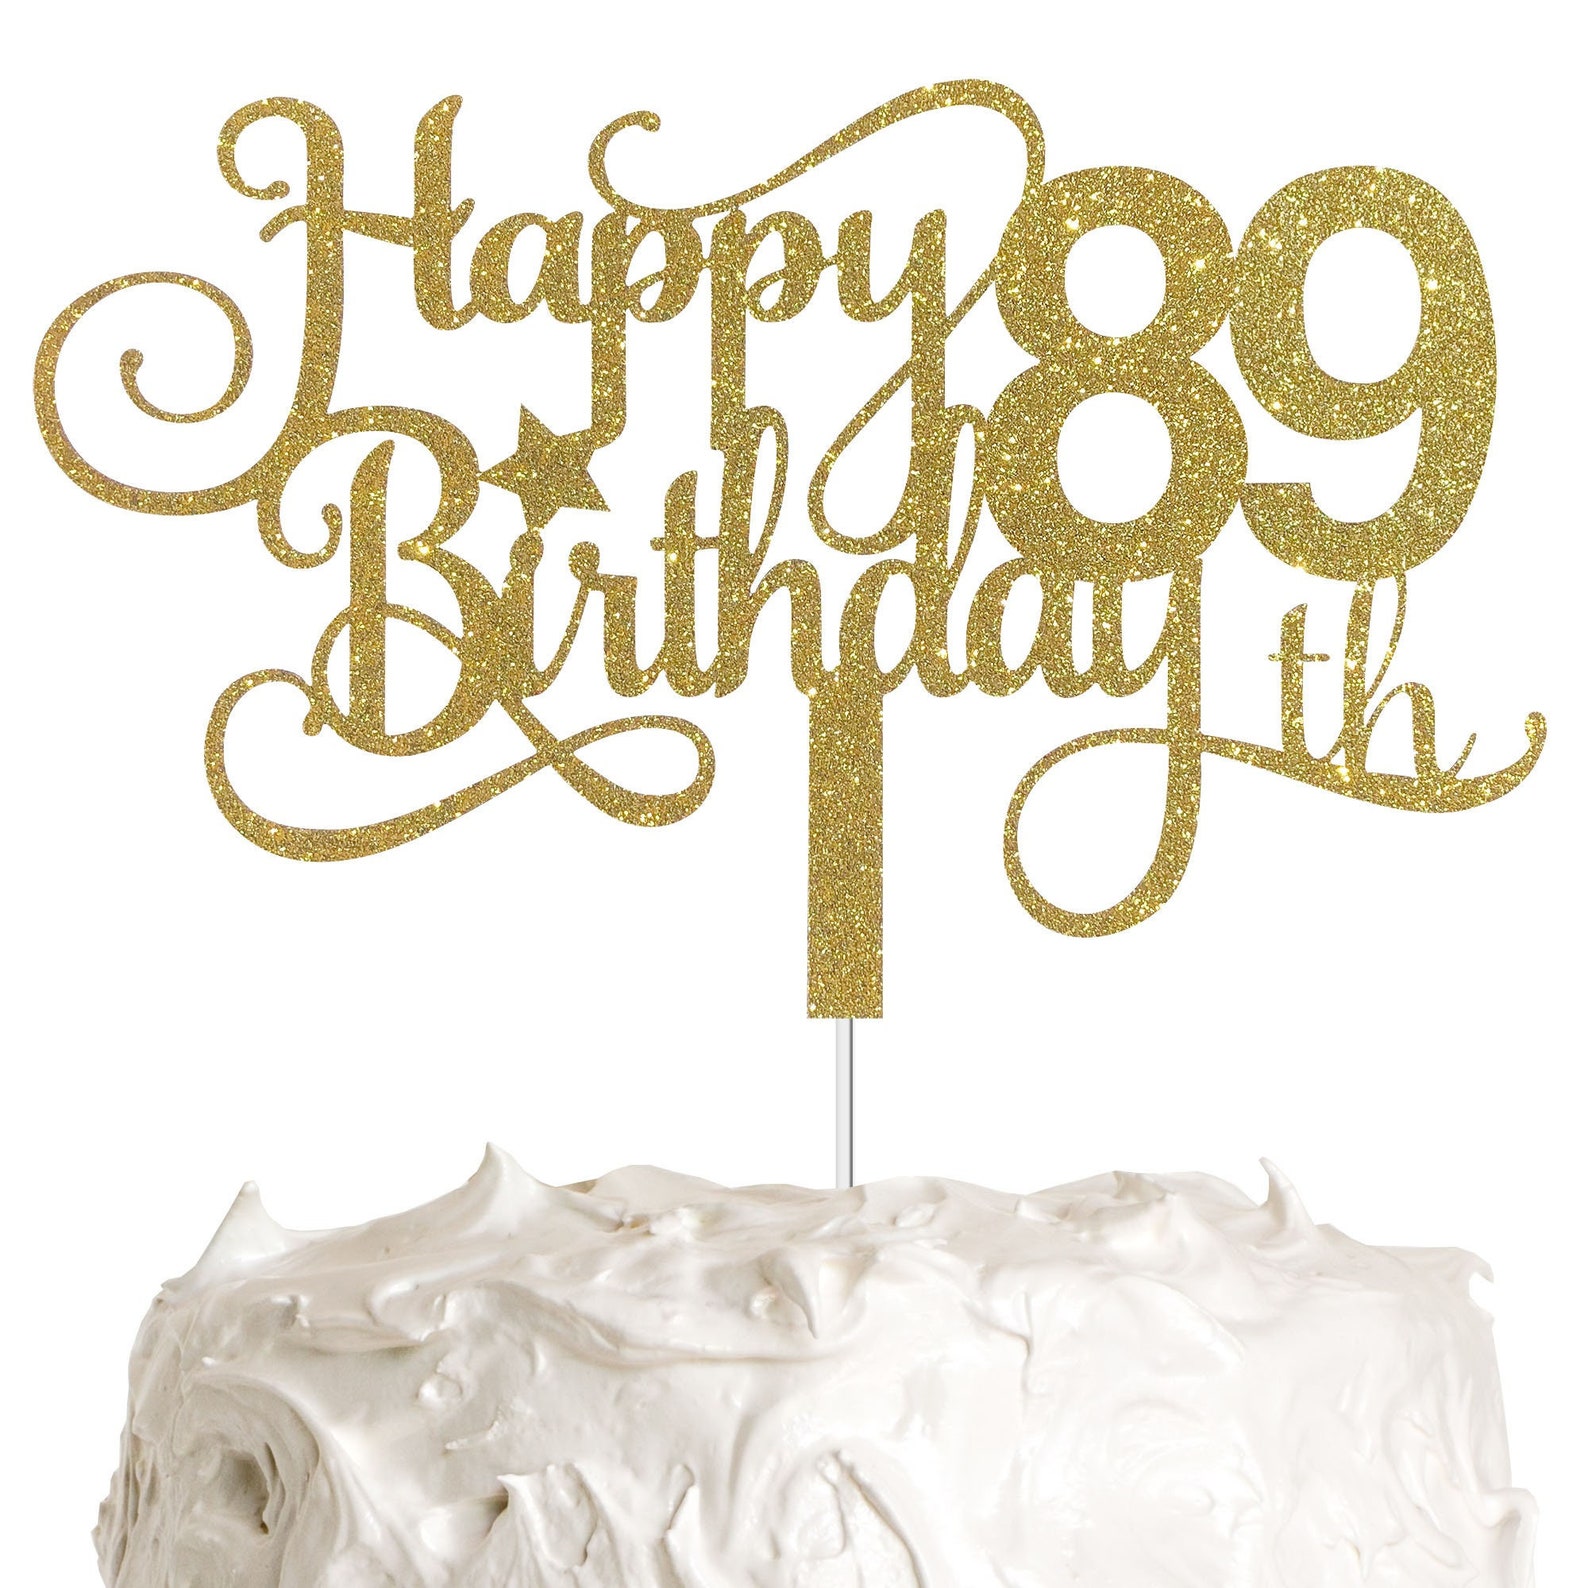 alpha-k-gg-89th-birthday-cake-topper-happy-89th-birthday-cake-etsy